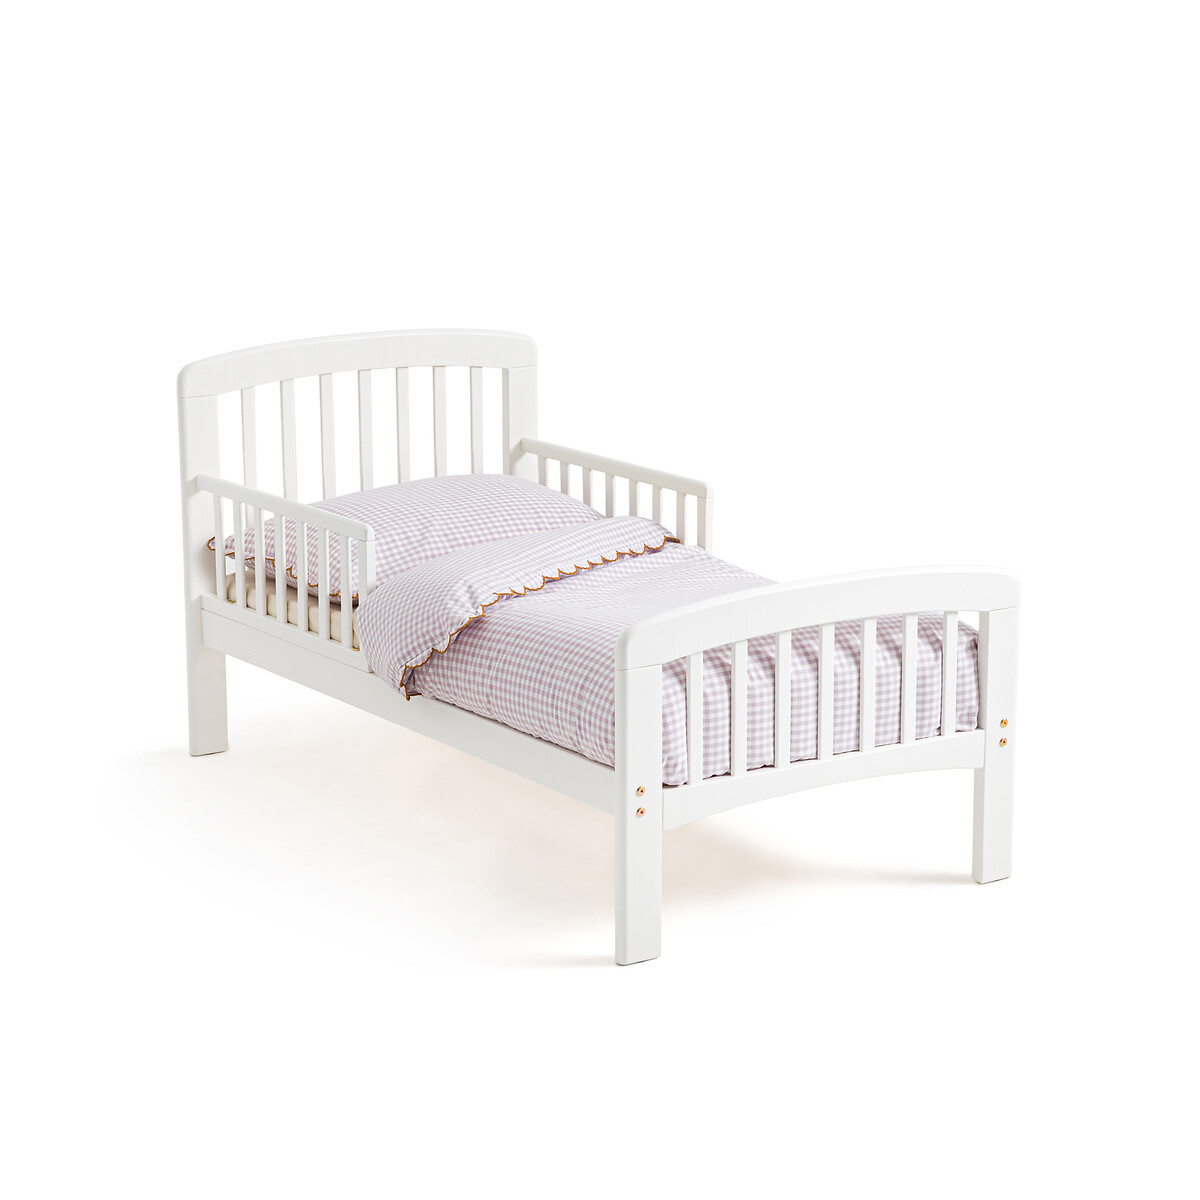 Кровать детская из березы Soti  70 x 140 см белый LaRedoute, размер 70 x 140 см - фото 1